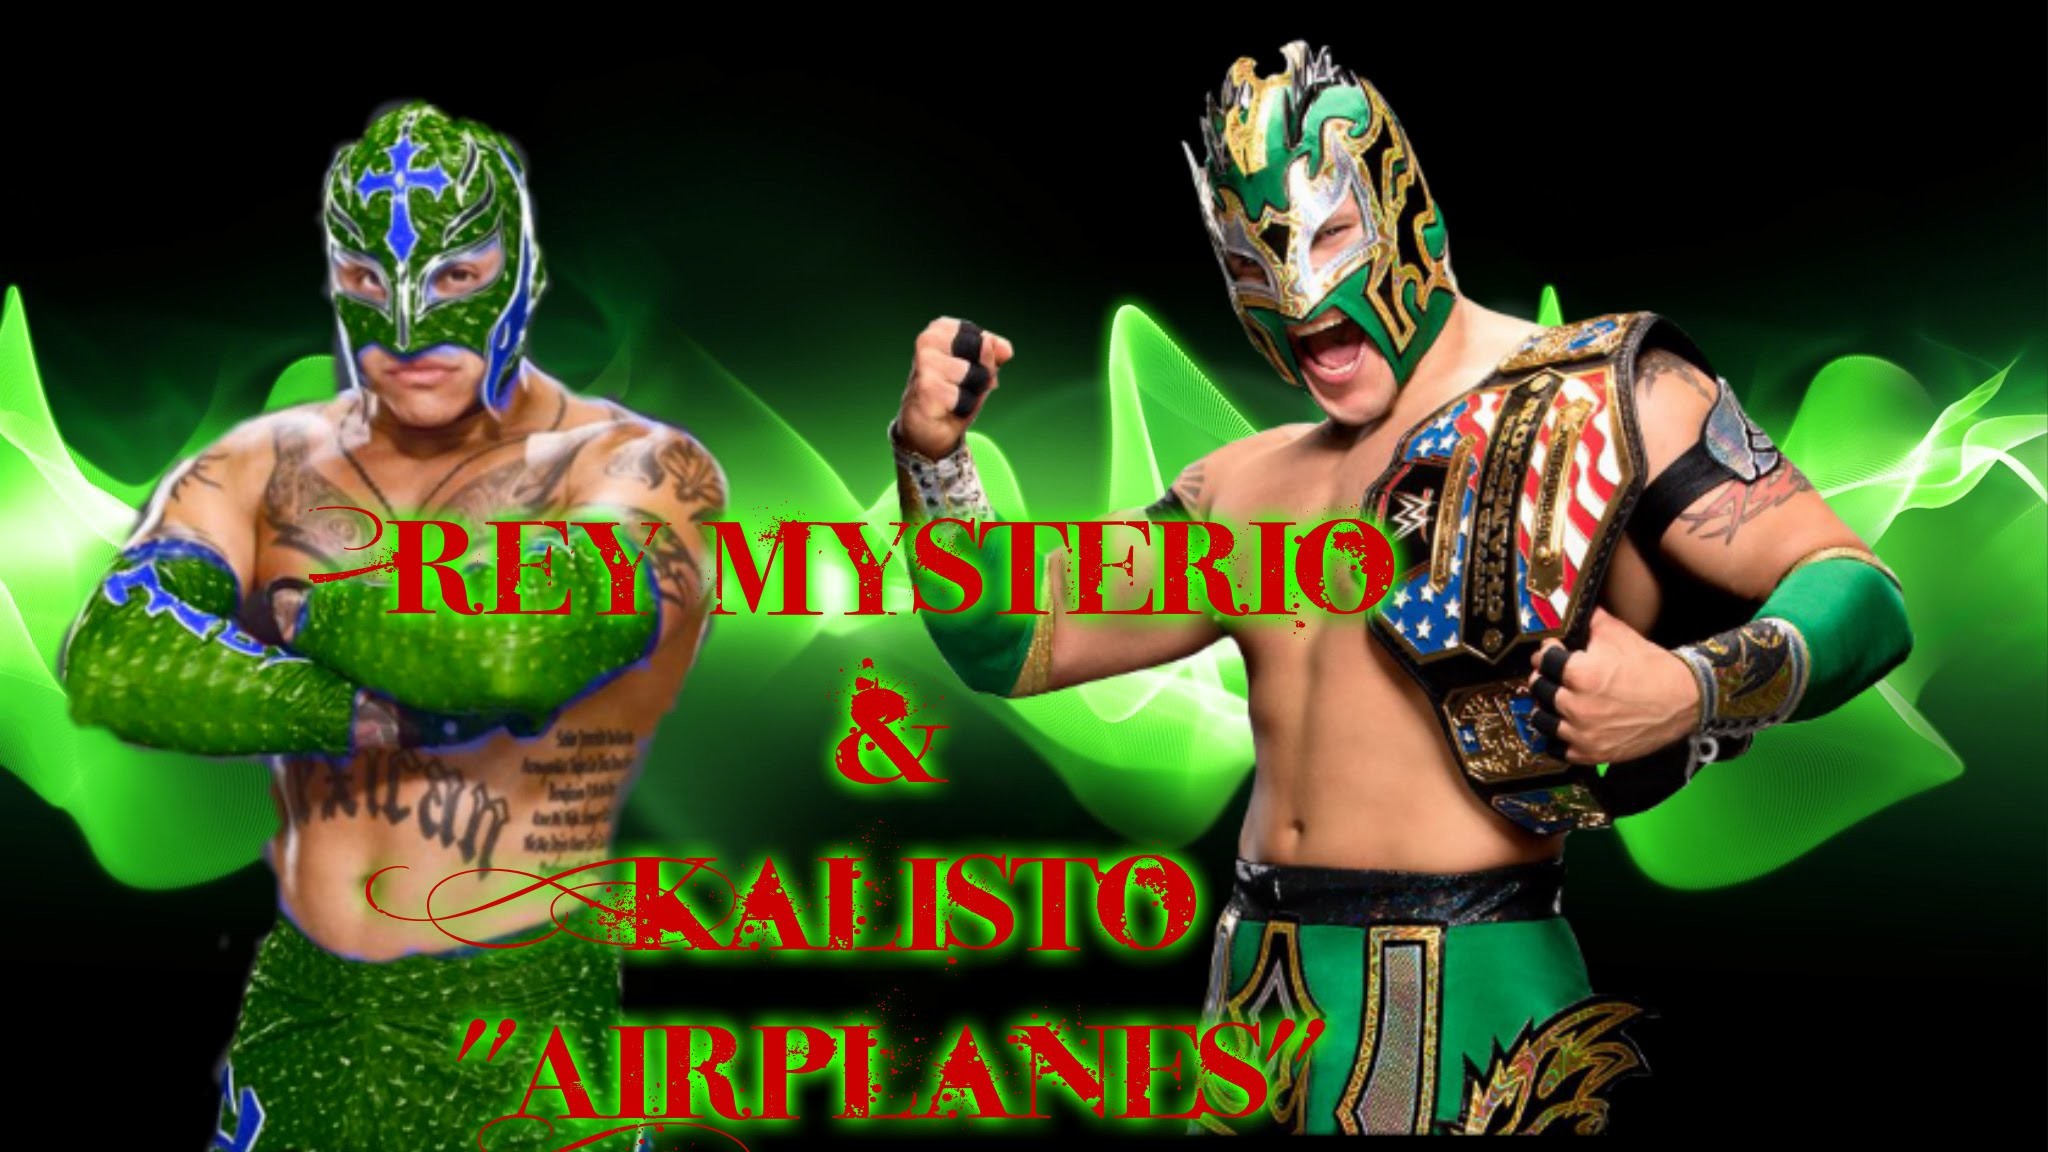 2048x1152 Rey Mysterio & Kalisto "Airplanes"